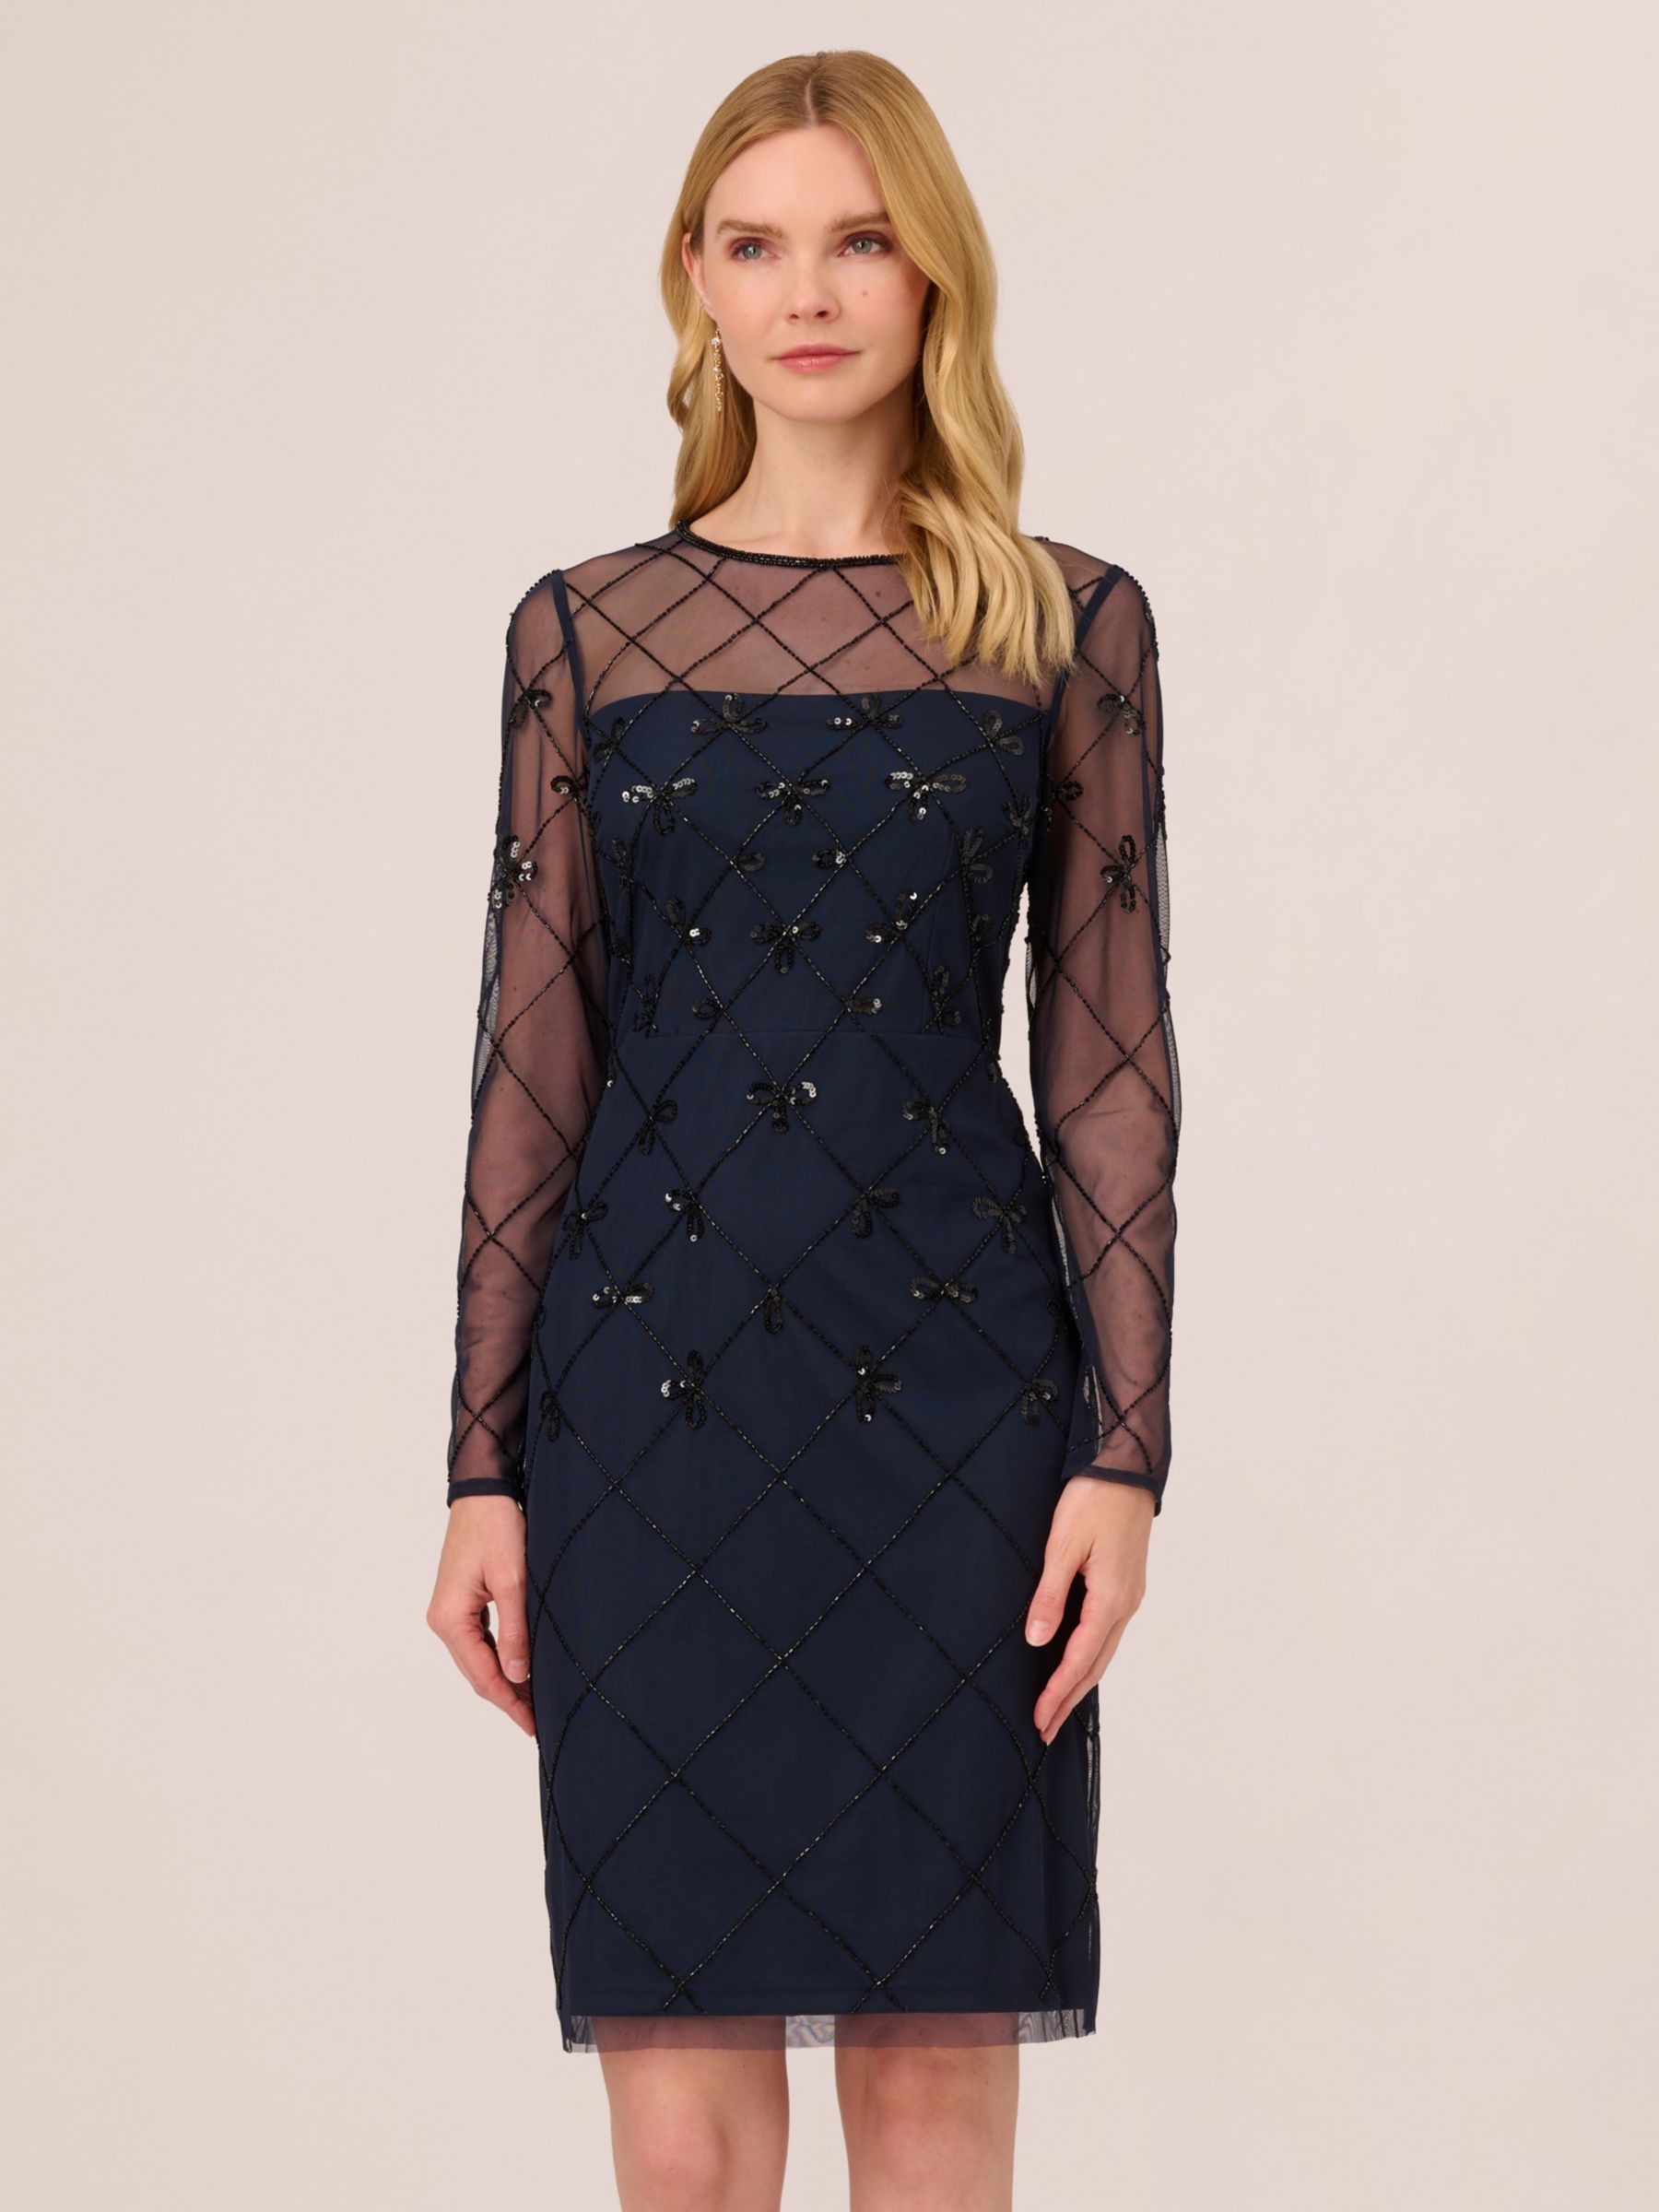 Коктейльное платье с украшением Papell Studio Adrianna Papell, темно-синий/черный